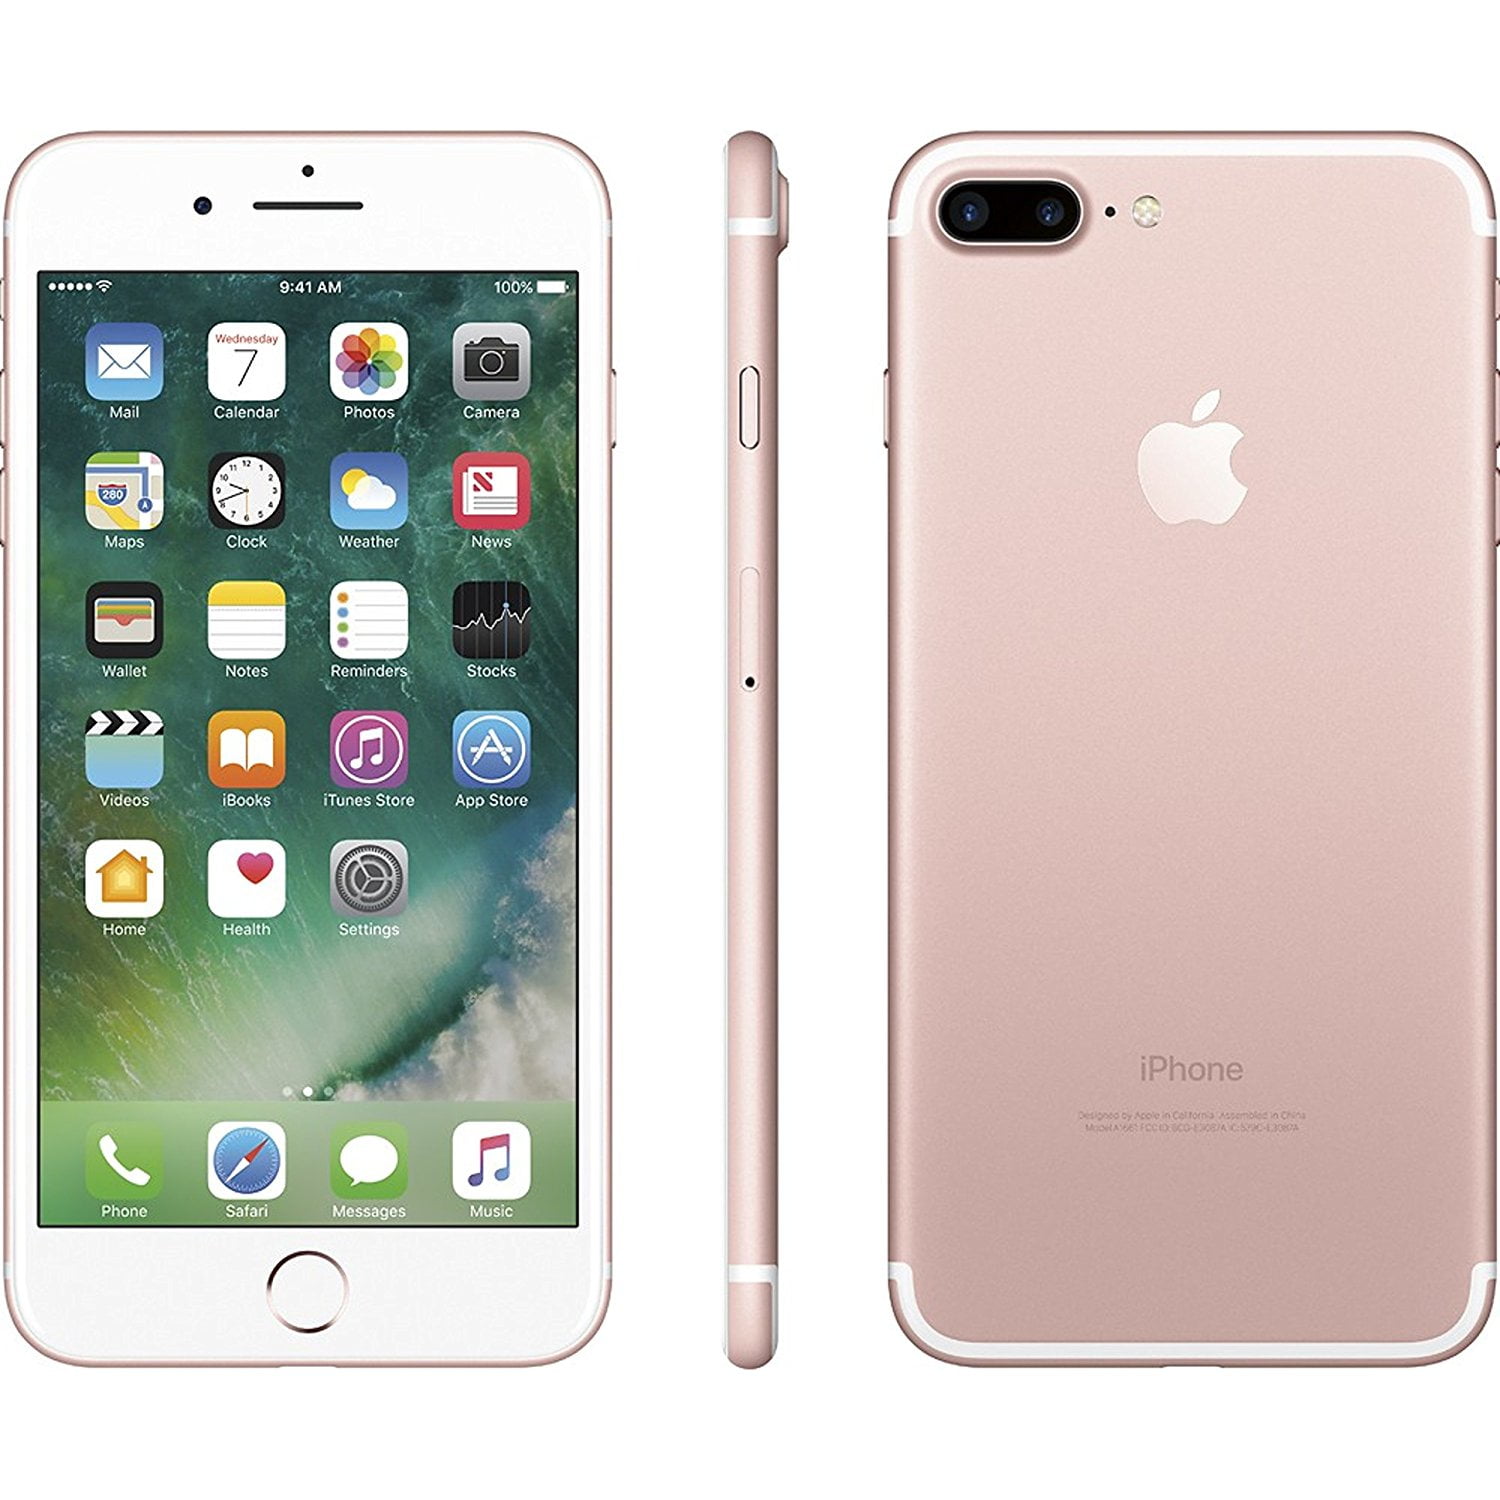 iPhone 7 Plus 128GB Oro rosa ( Desbloqueado ) ( Paraguay